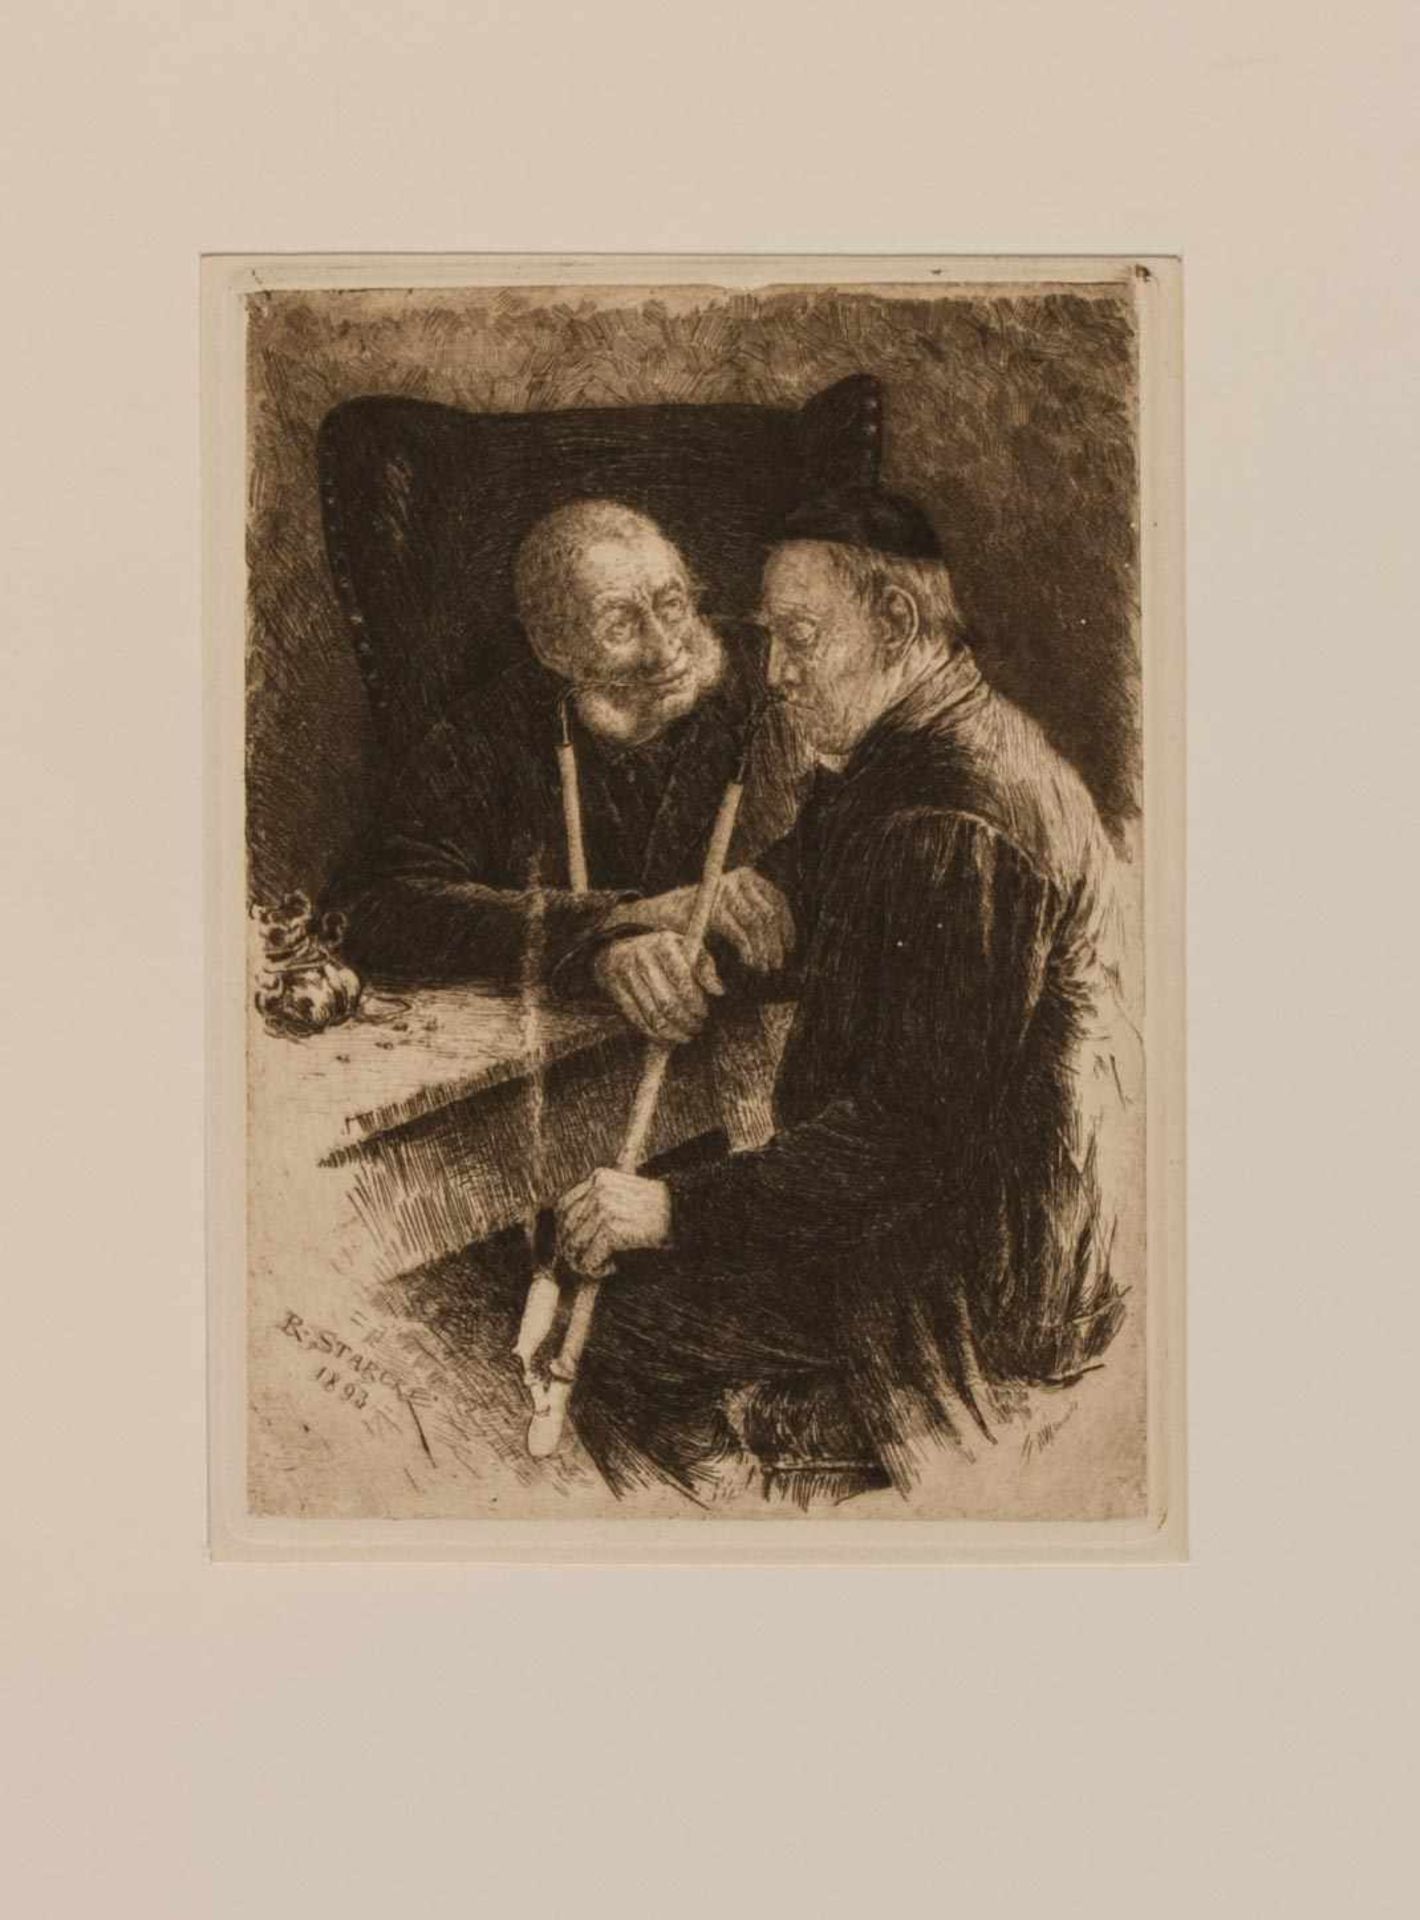 Richard Starcke (Naumburg 1864 - 1945 Weimar, deutscher Maler, Illustrator u. Radierer, Std. in